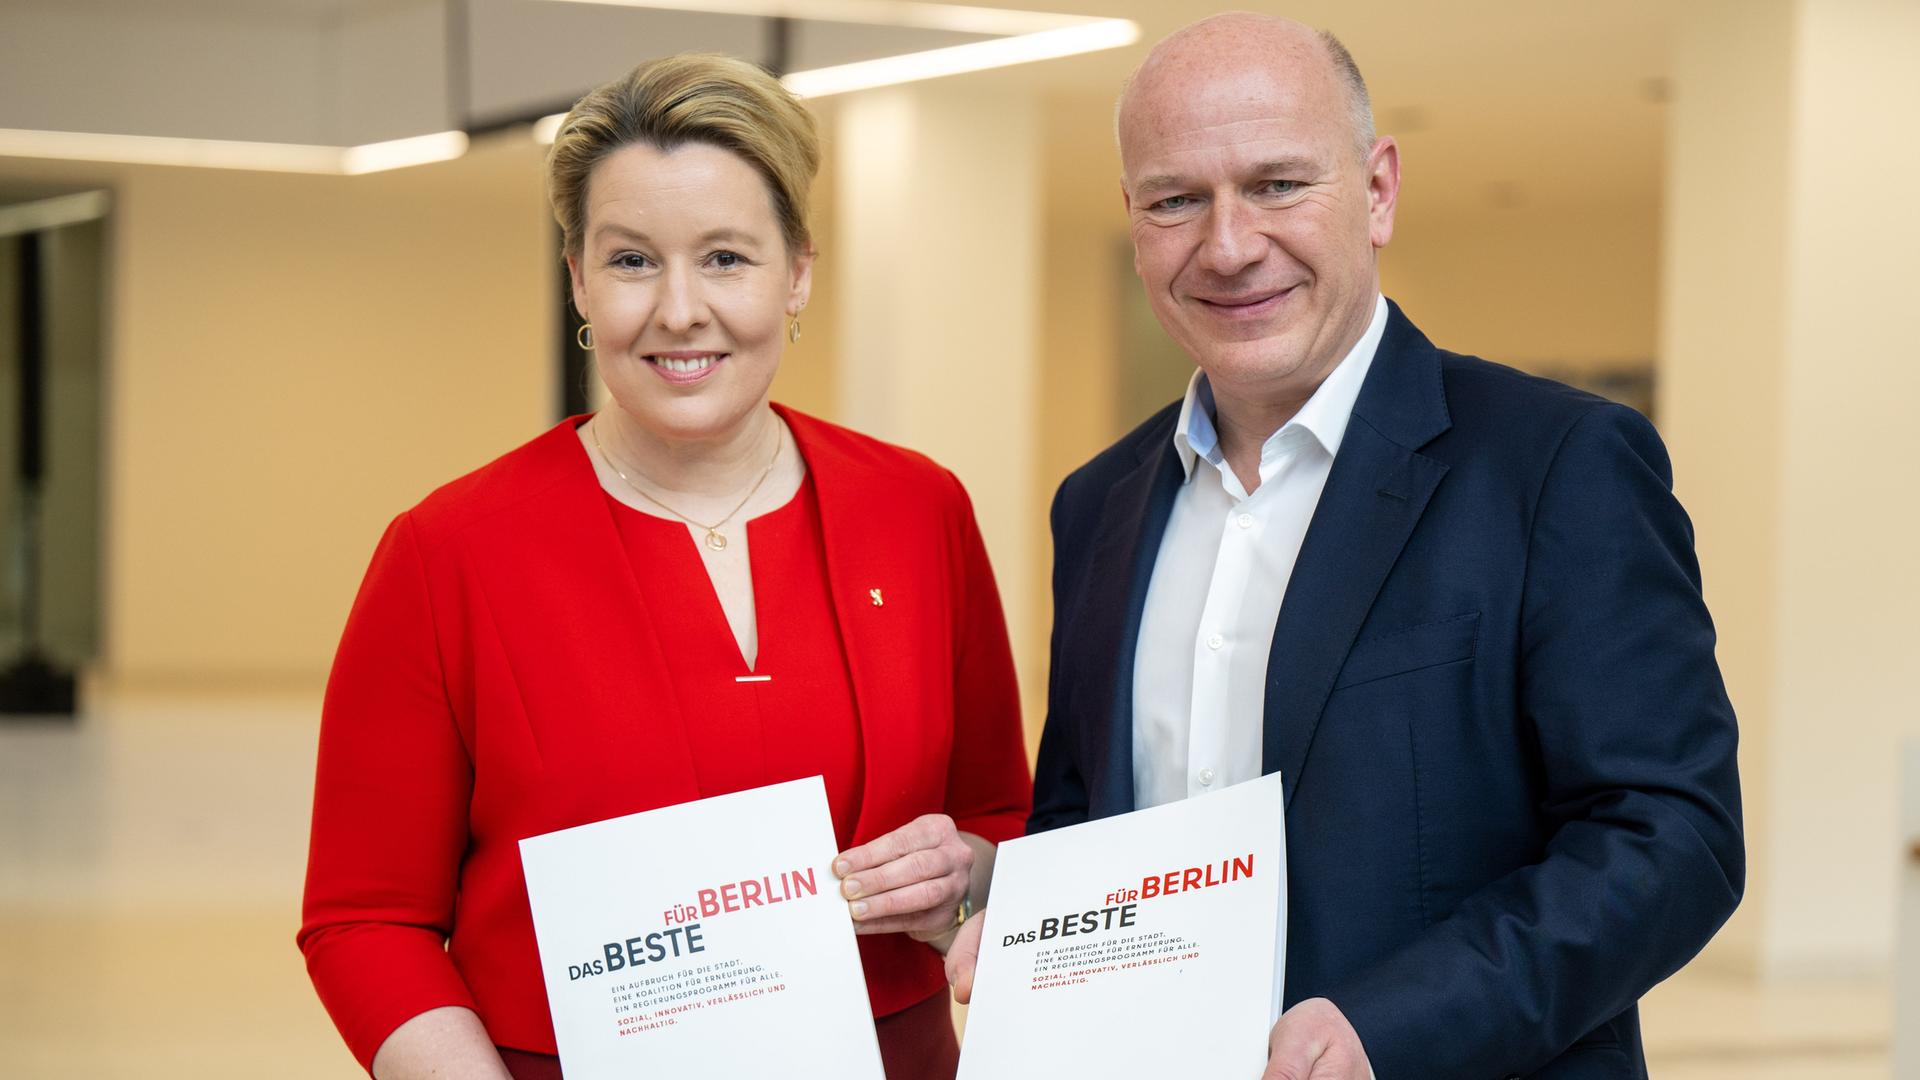 Franziska Giffey (links), in einem roten Kleid, und Kai Wegner, in einem dunklen Anzug, halten je ein Exemplar ihres Koalitionsvertrags in Händen, Aufschrift: "Das Beste für Berlin".